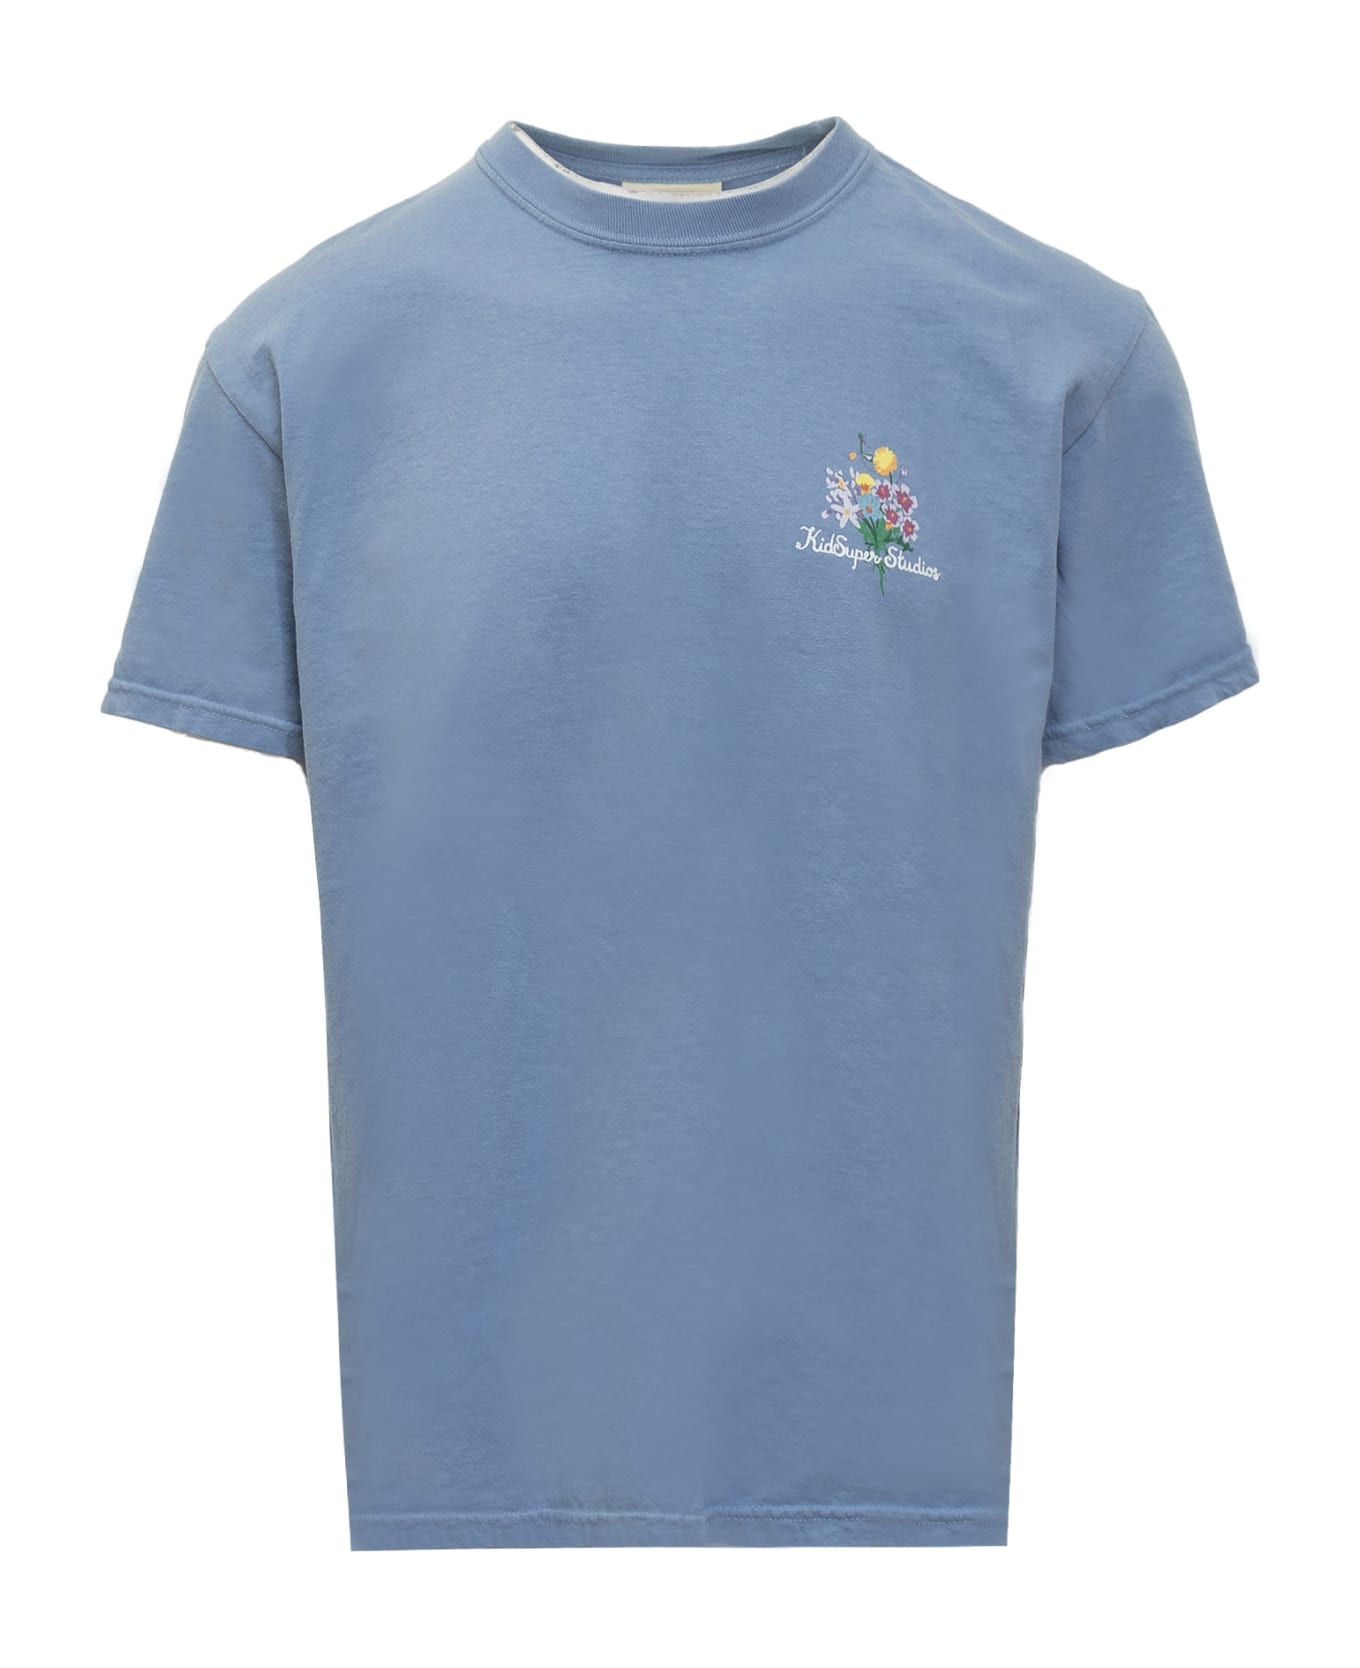 Kidsuper Growing Ideas T-shirt - BLUE シャツ